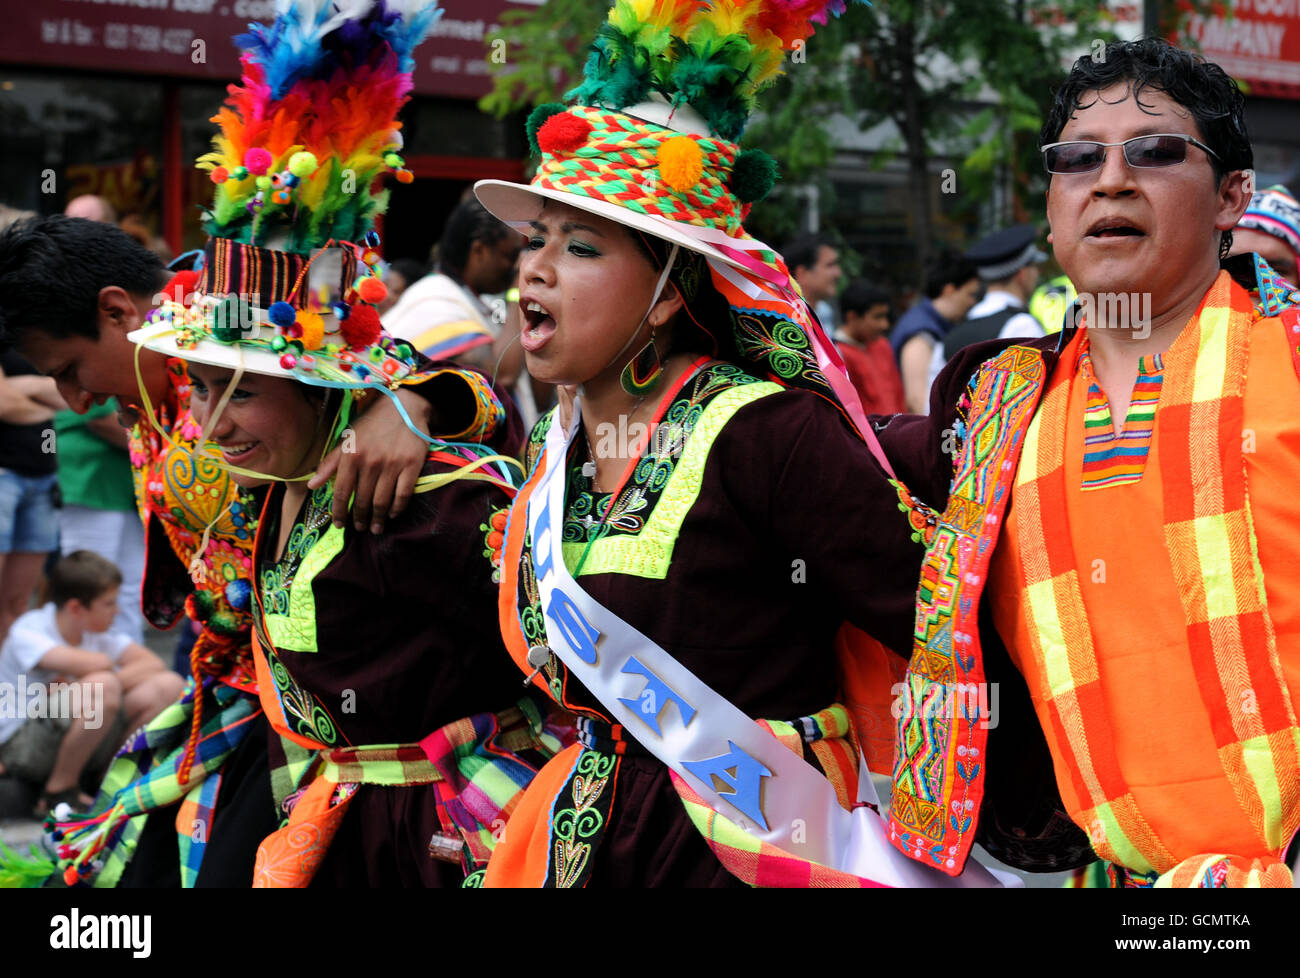 Bailarines en Walworth Road, Londres participando en el carnaval anual del Pueblo que celebra la cultura latinoamericana. Foto de stock